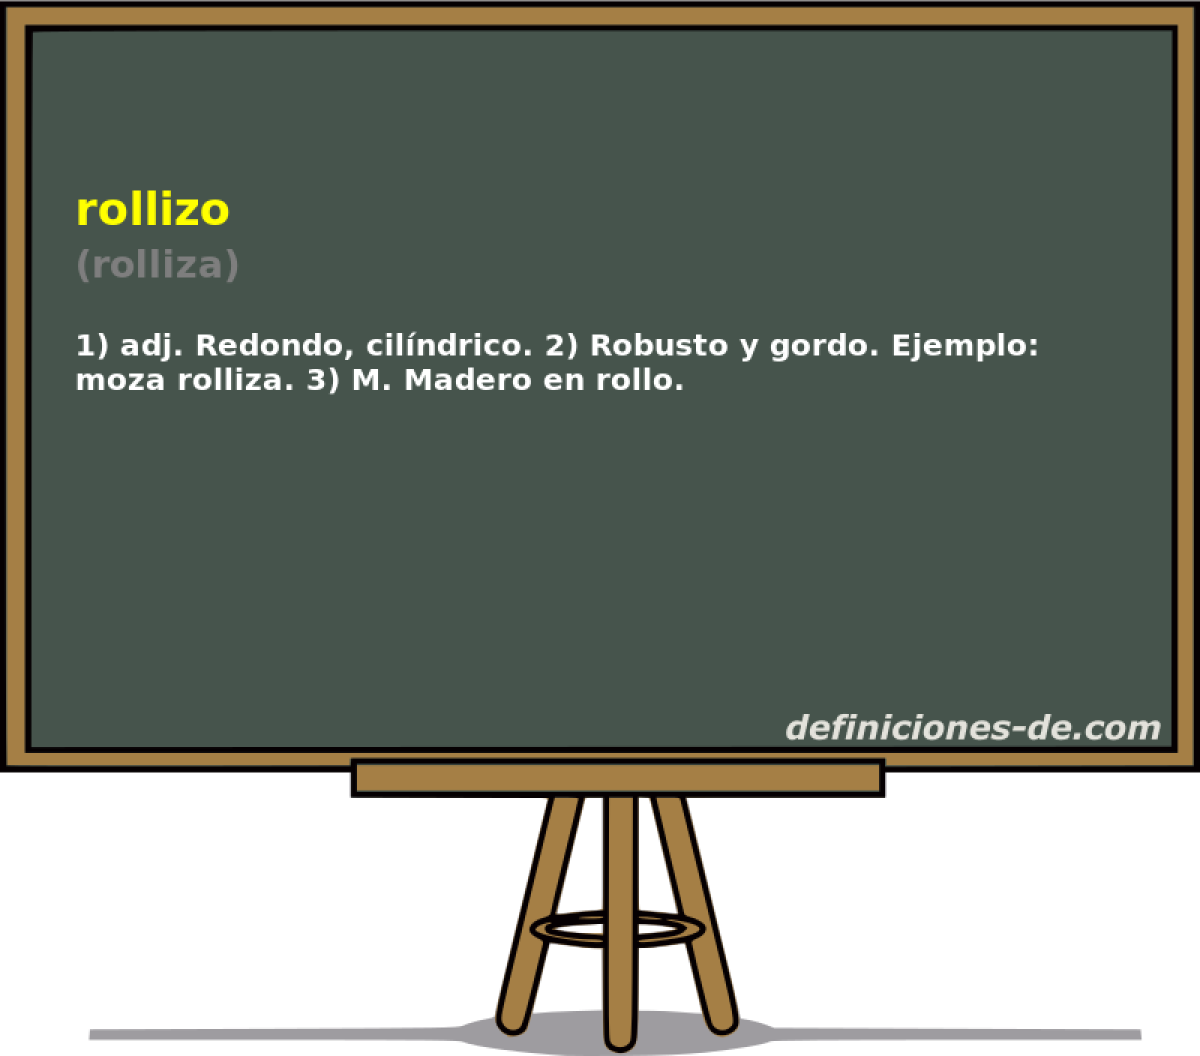 rollizo (rolliza)